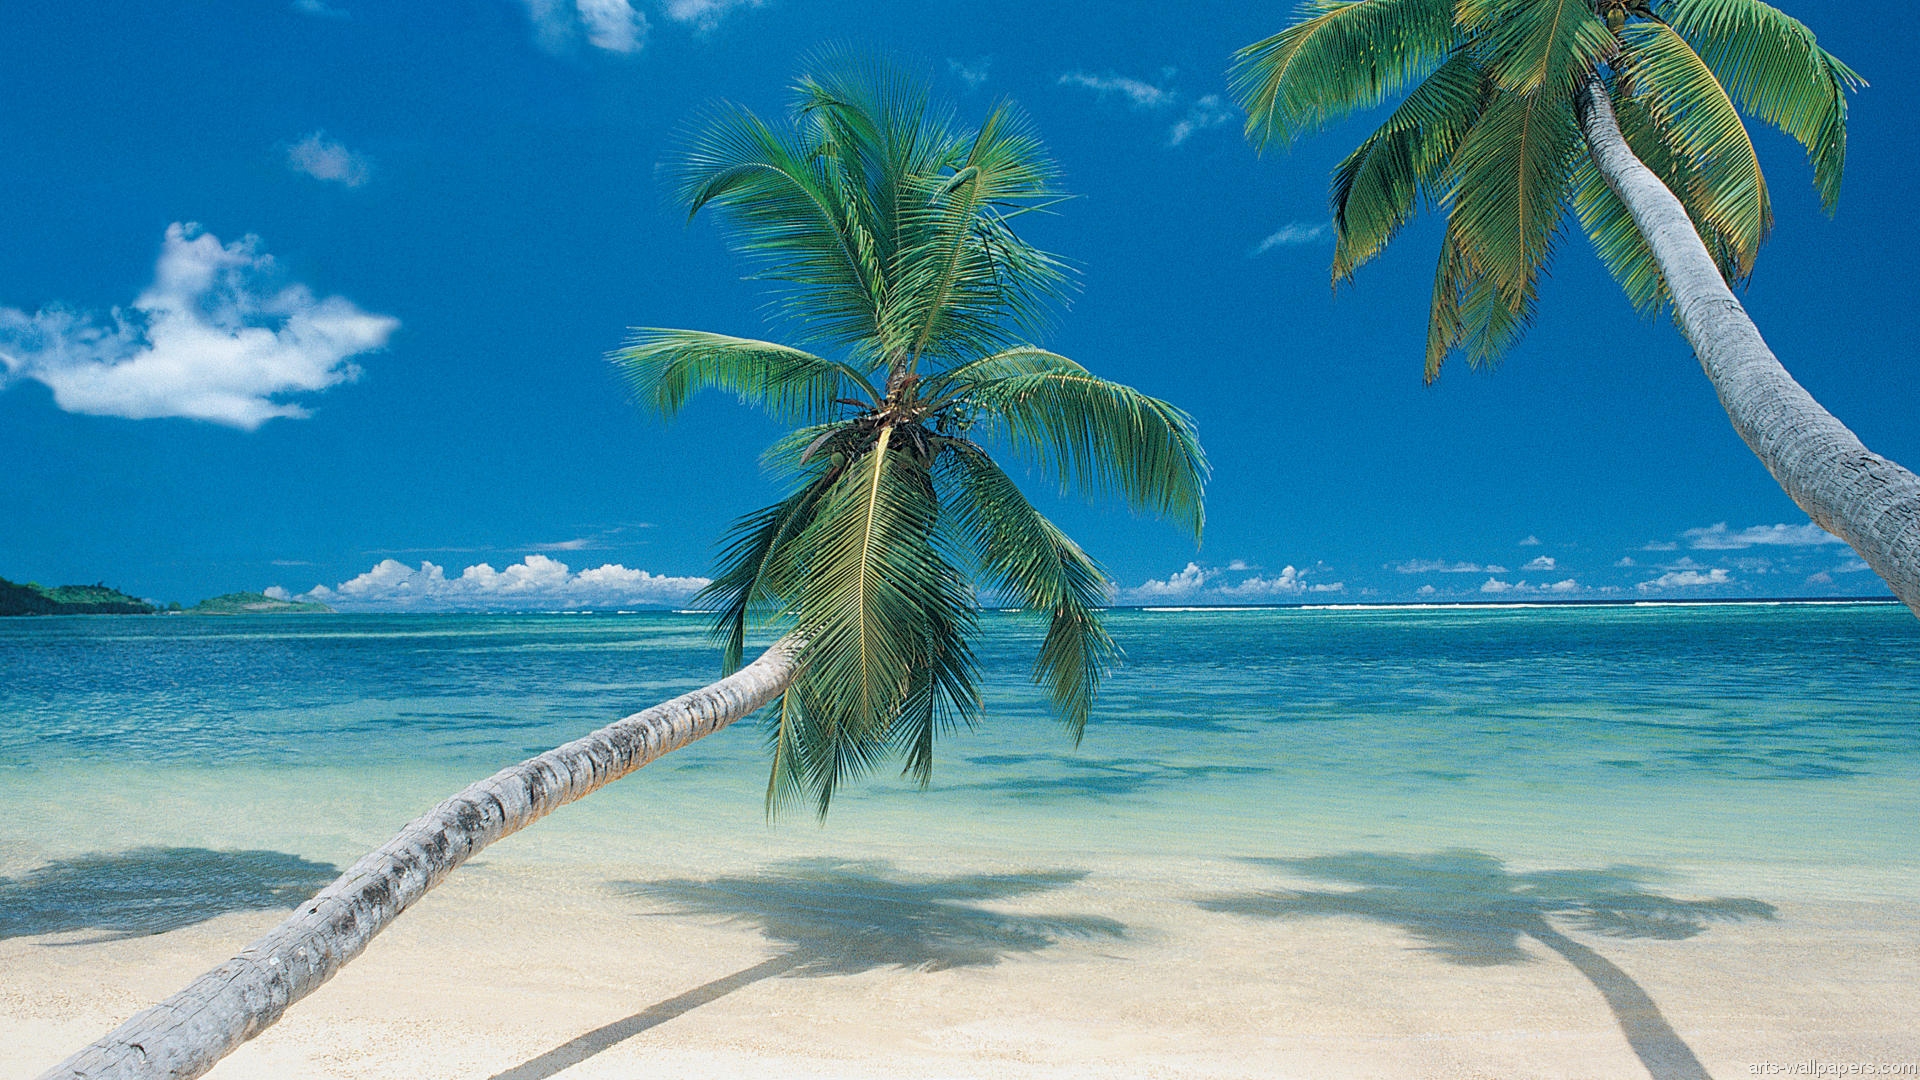 Tropical Paradise Wallpaper Hawaii Maldives Tahiti Islands Beach